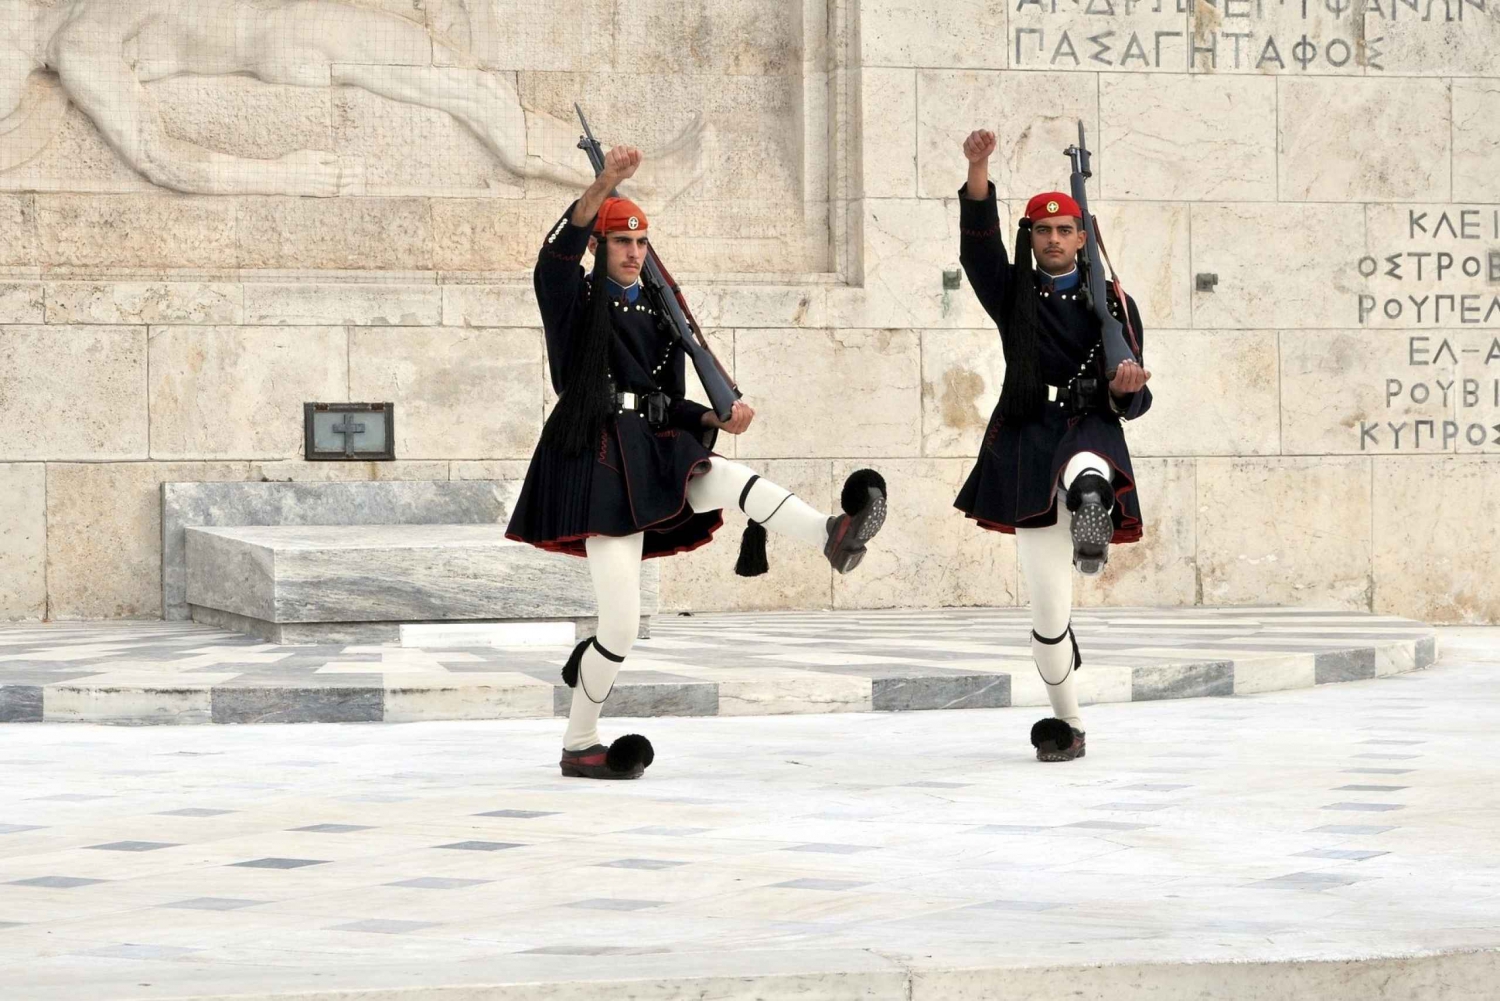 Athens: History of Rebellion Walking Tour